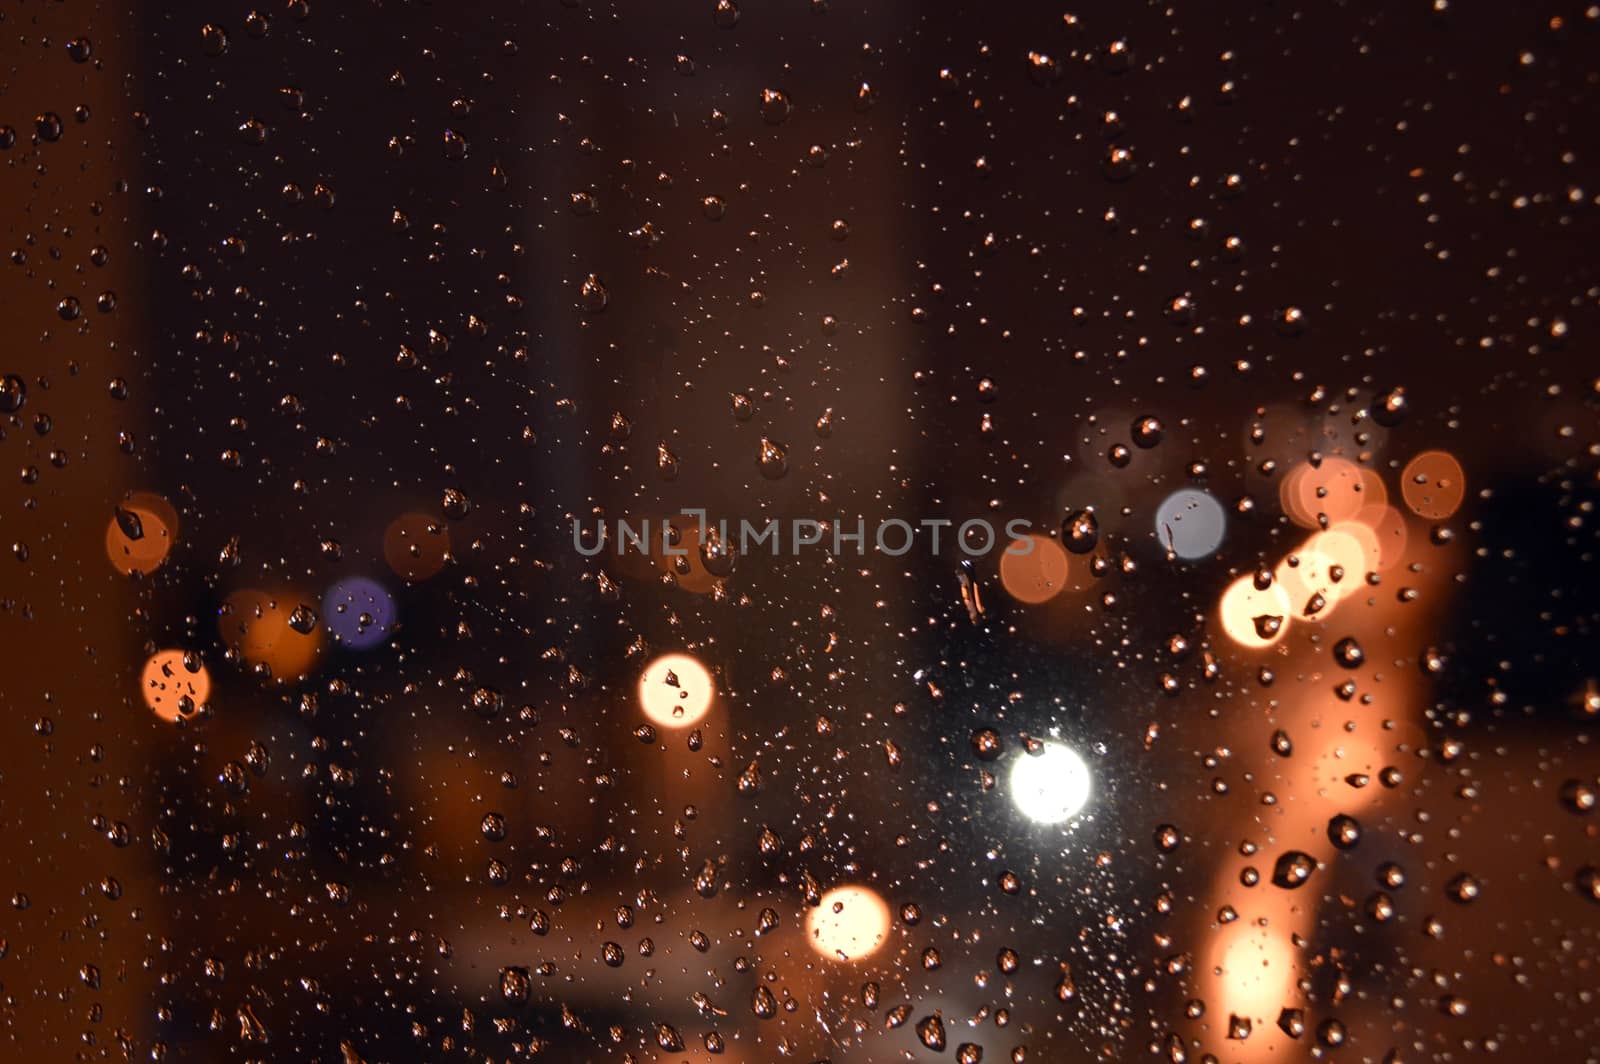 Rain drops on night window by sergpet